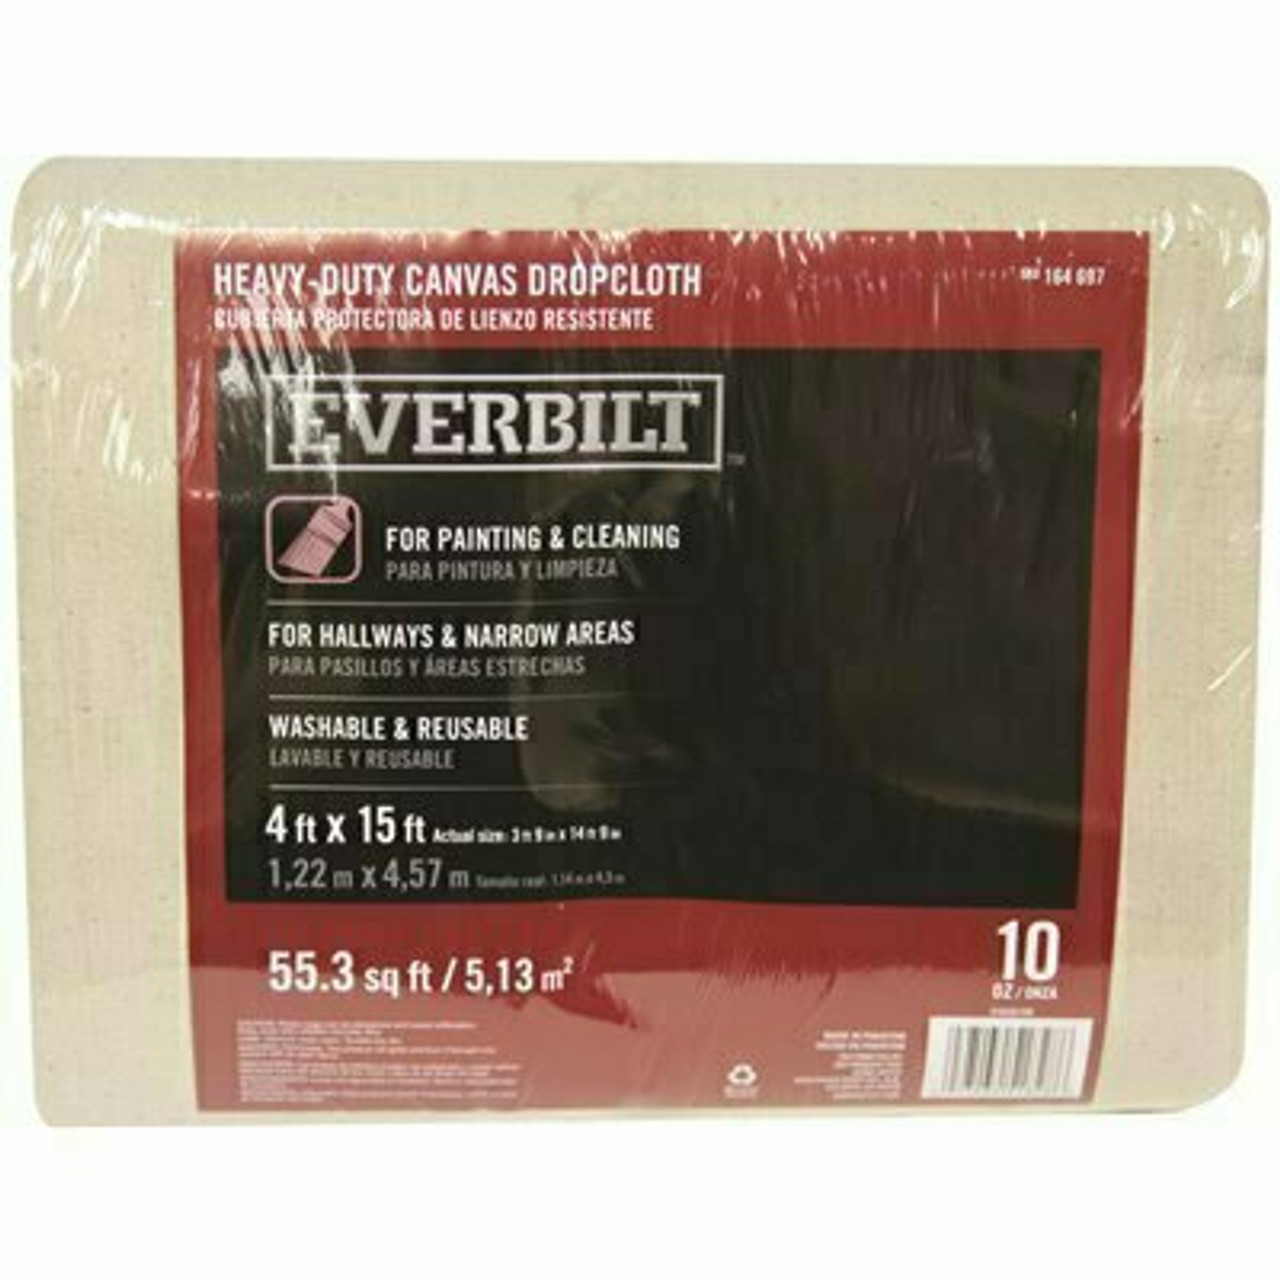 Everbilt 4 Ft. X 15 Ft. 10 Oz. Canvas Drop Cloth